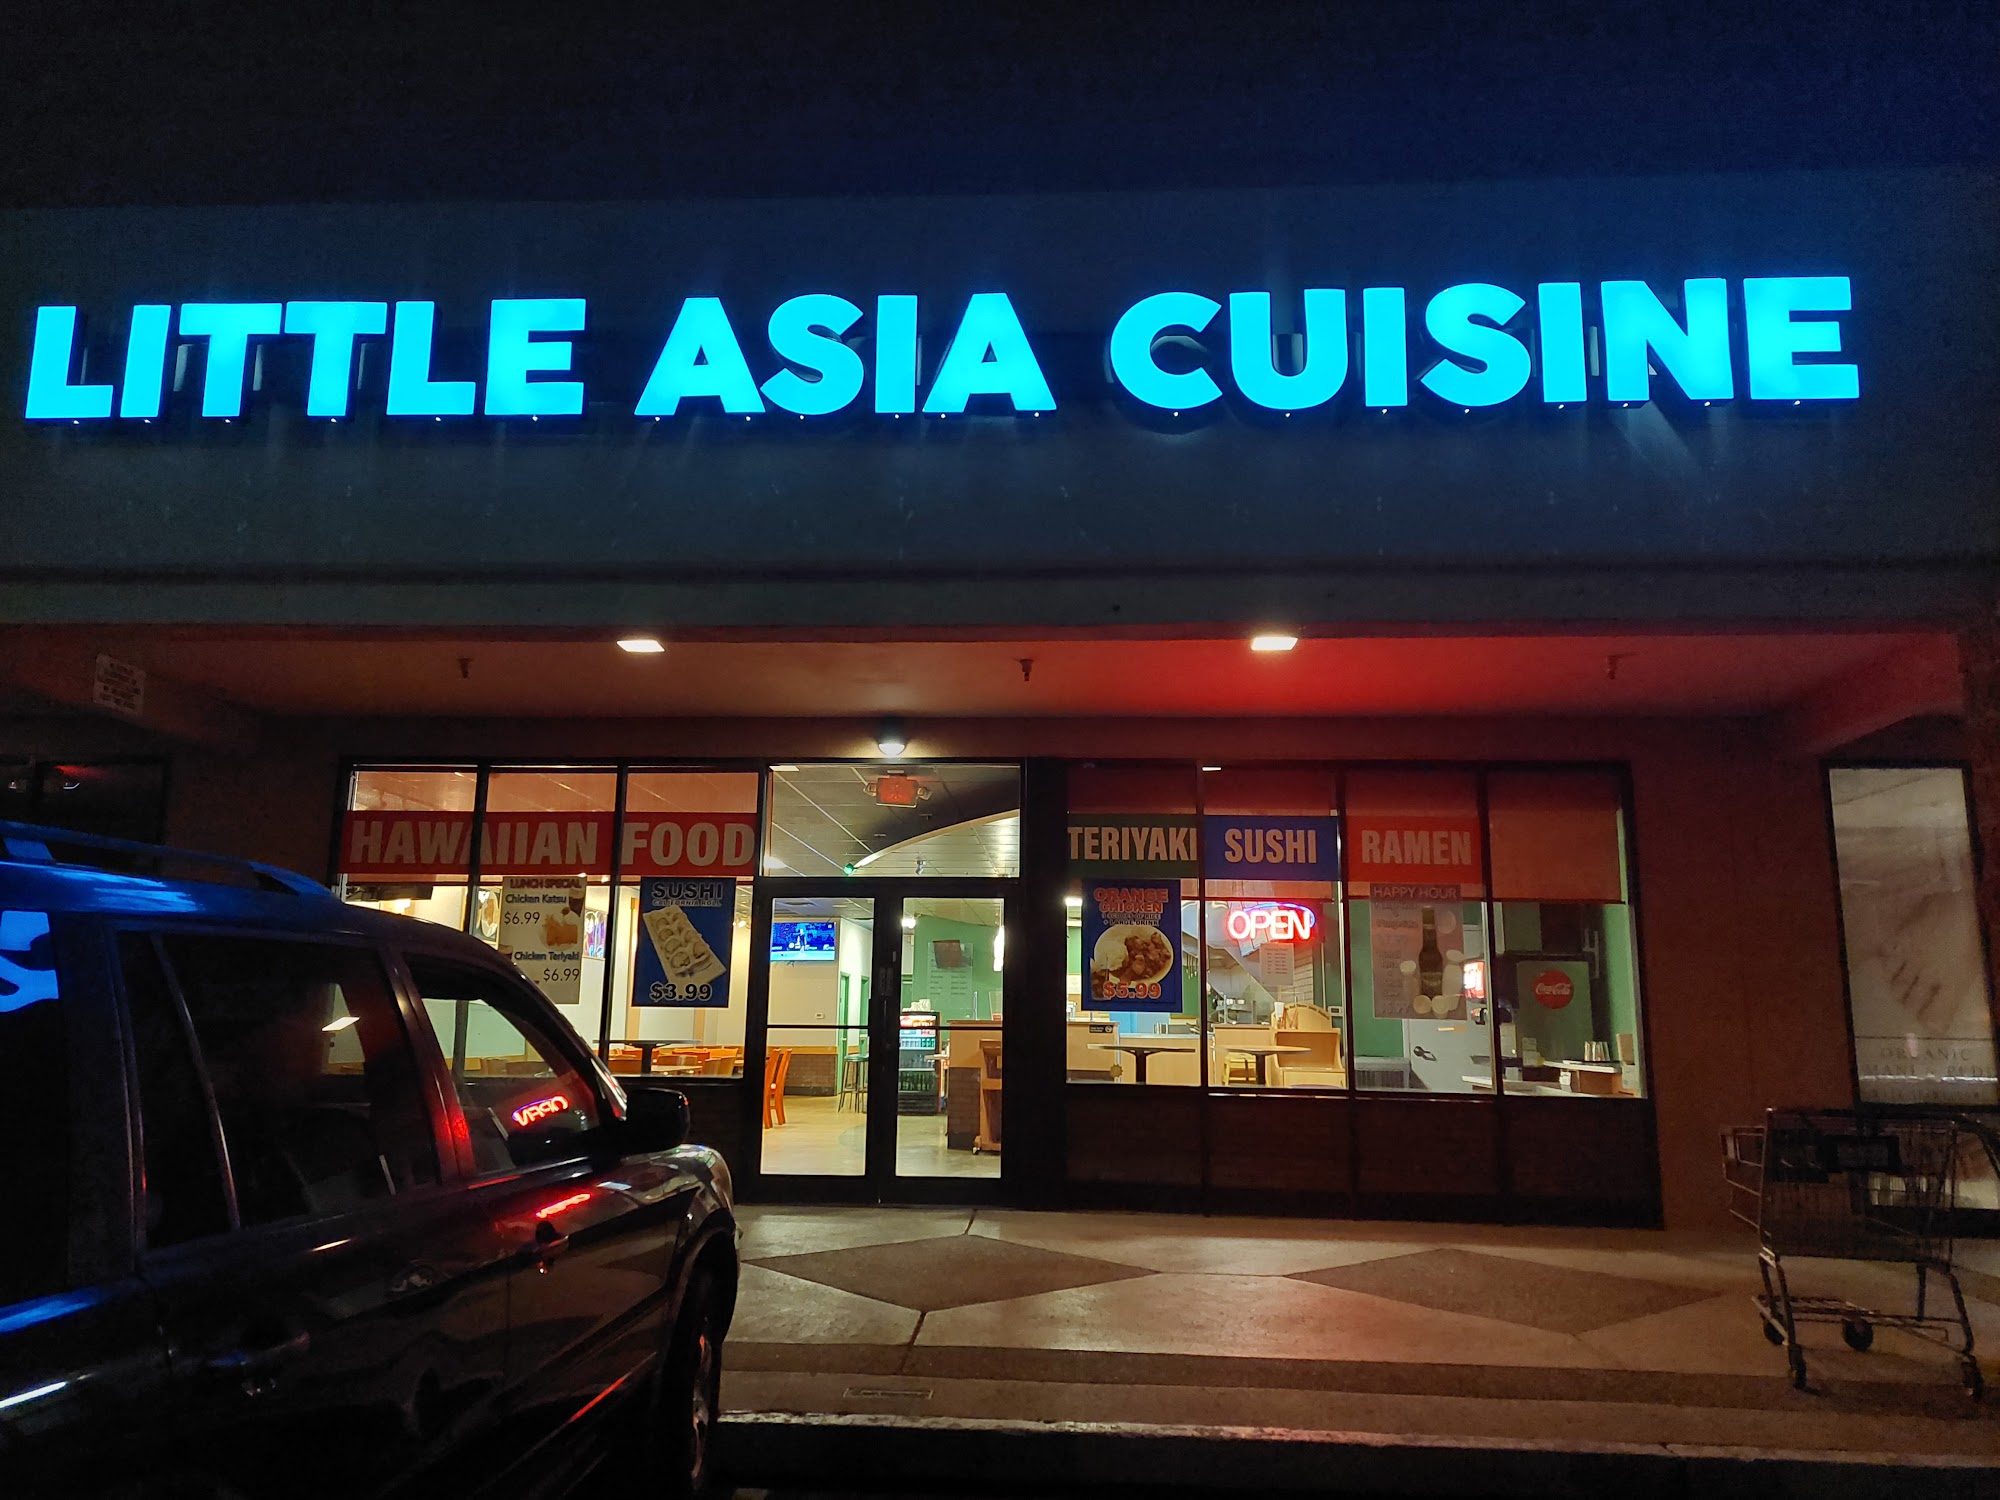 Little Asia Cuisine